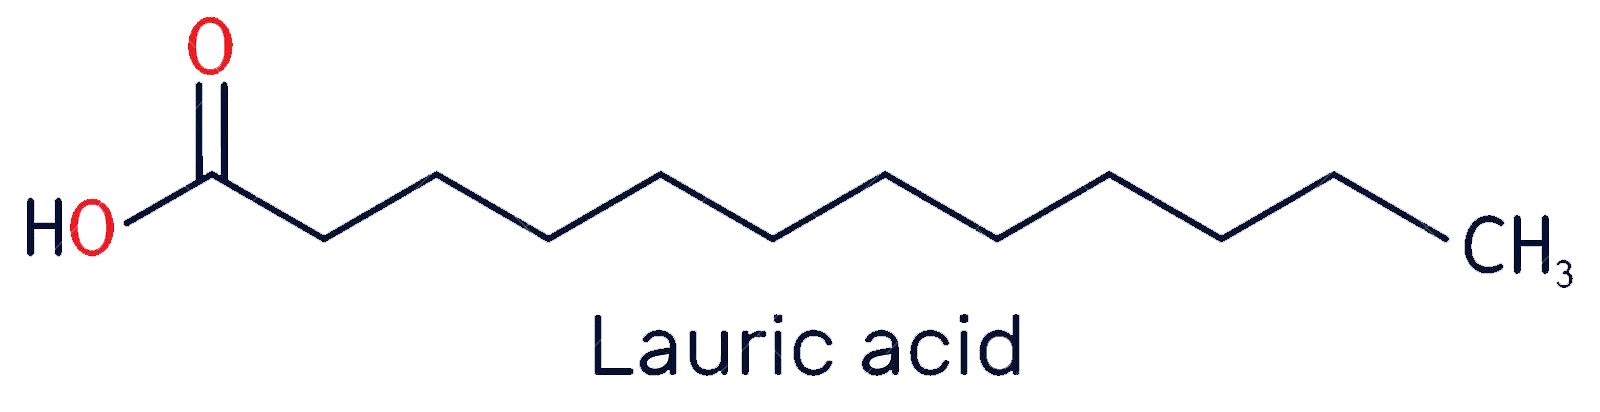 Axit lauric là thành phần chính của chất béo có trong ấu trùng ruồi lính đen đem lại nhiều lợi ích cho sức khỏe đường ruột heo